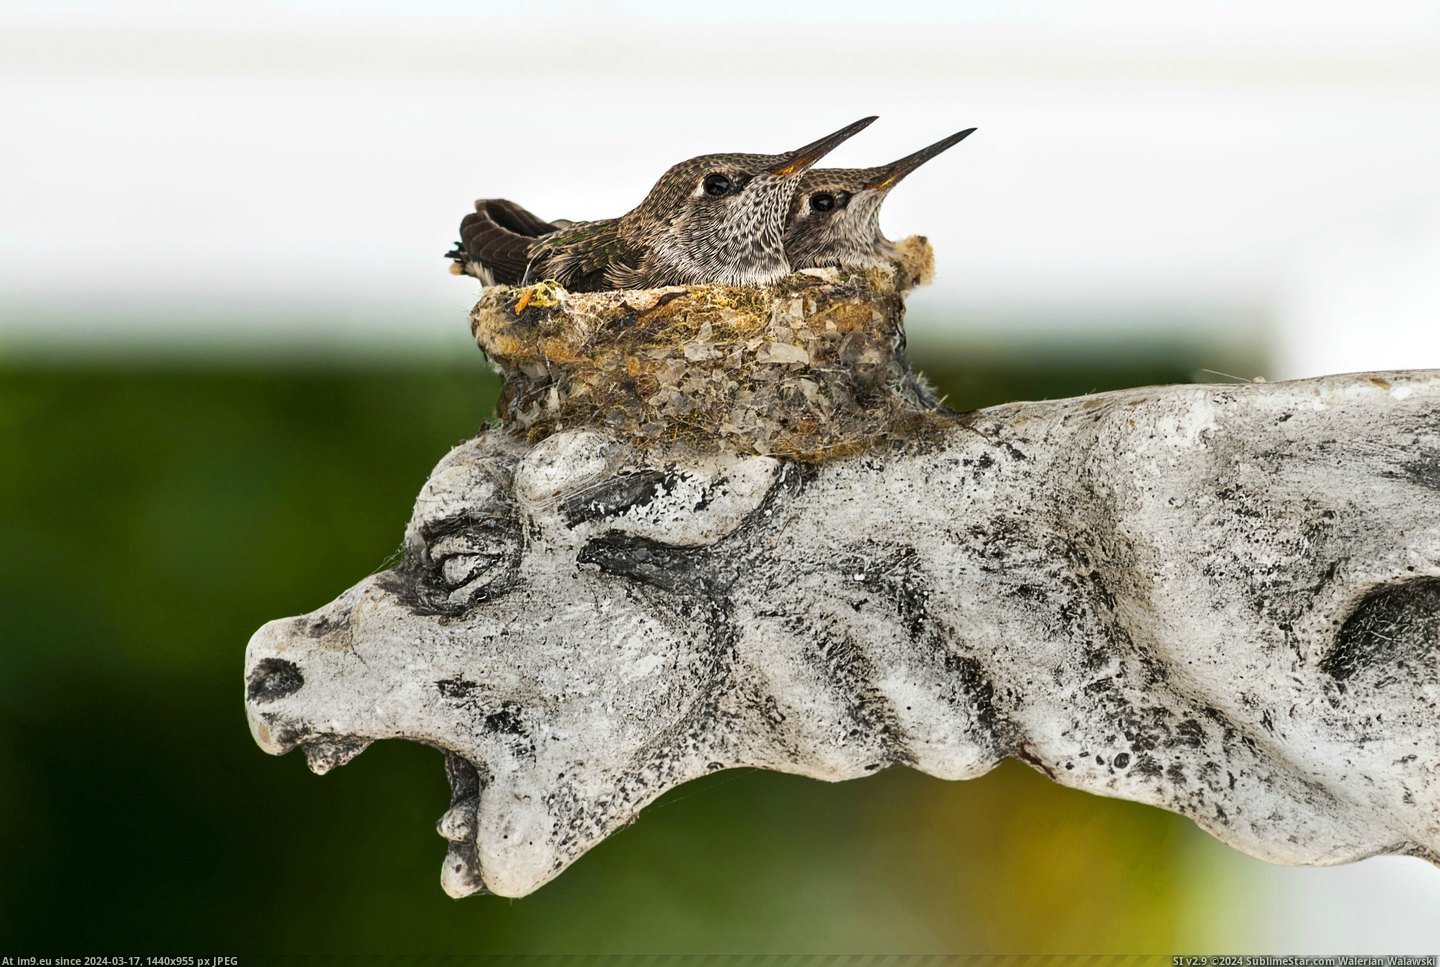 #Baby #Wait #Gargoyle #Hummingbirds #Mama #Atop [Aww] Baby hummingbirds wait for mama atop gargoyle. Pic. (Obraz z album My r/AWW favs))